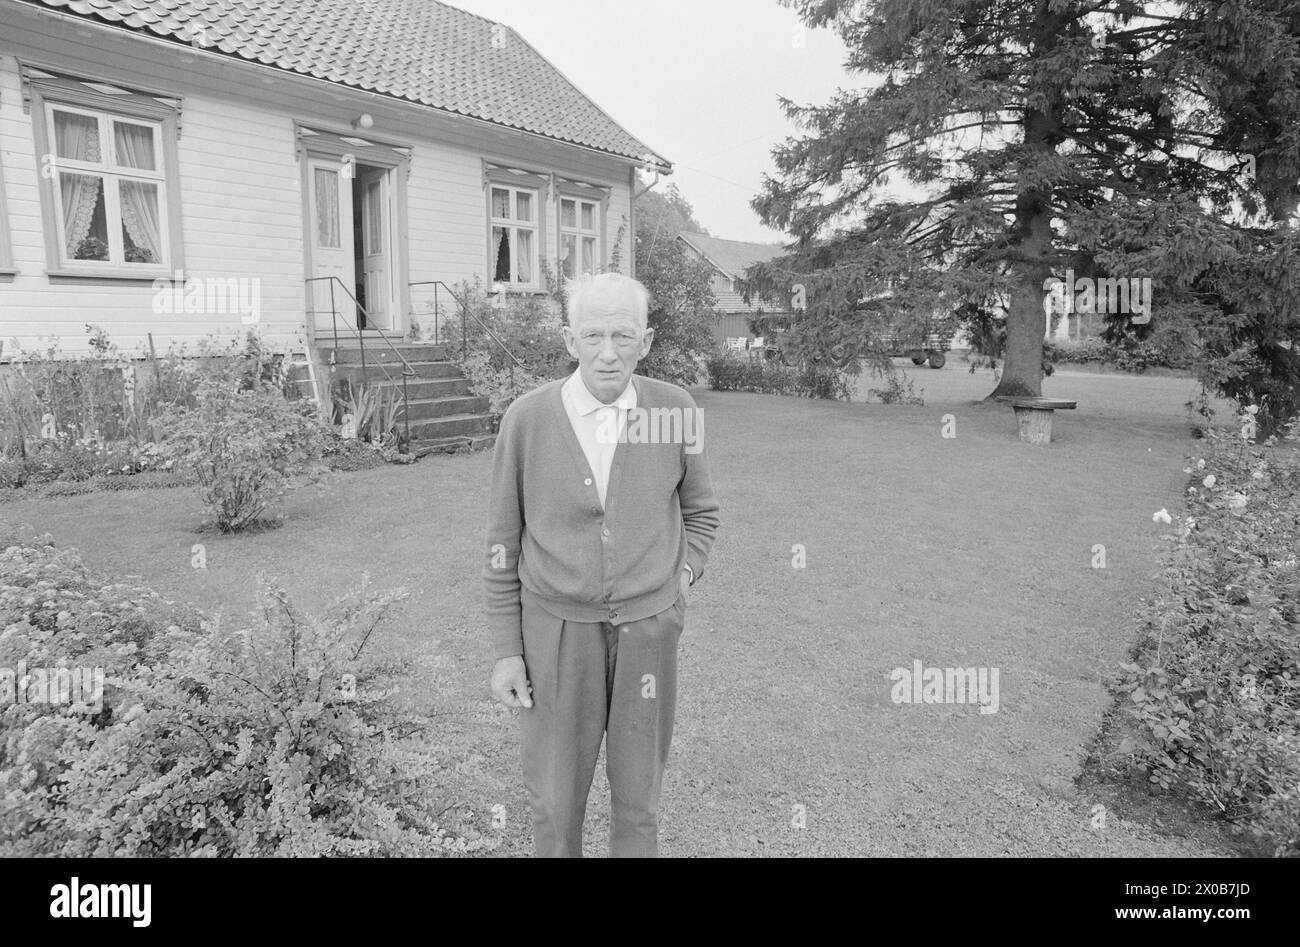 Aktuell 36-2-1973 : De holder kokenDet er 57 år siden Einar Gerhardsen for første gang deltok i en valgkamp. Nå er han 75 år, men slåss fortsatt i fremste linje. Også i andre partier er de gamle med. Kjell Bondevik, 72 år, og Bent Røiseland, 71 år, spiller viktige roller i kampen. Aktuell har fulgt hver av dem én dag.  Røiseland slappet av hjemme i Holum, tl sønnen kjørte ham til et kveldsmøte i Vennesla.  Foto: Aage Storløkken / Aktuell / NTB ***FOTO IKKE BILDEBEHANDLET***    This text has been automatically translated! Stock Photo